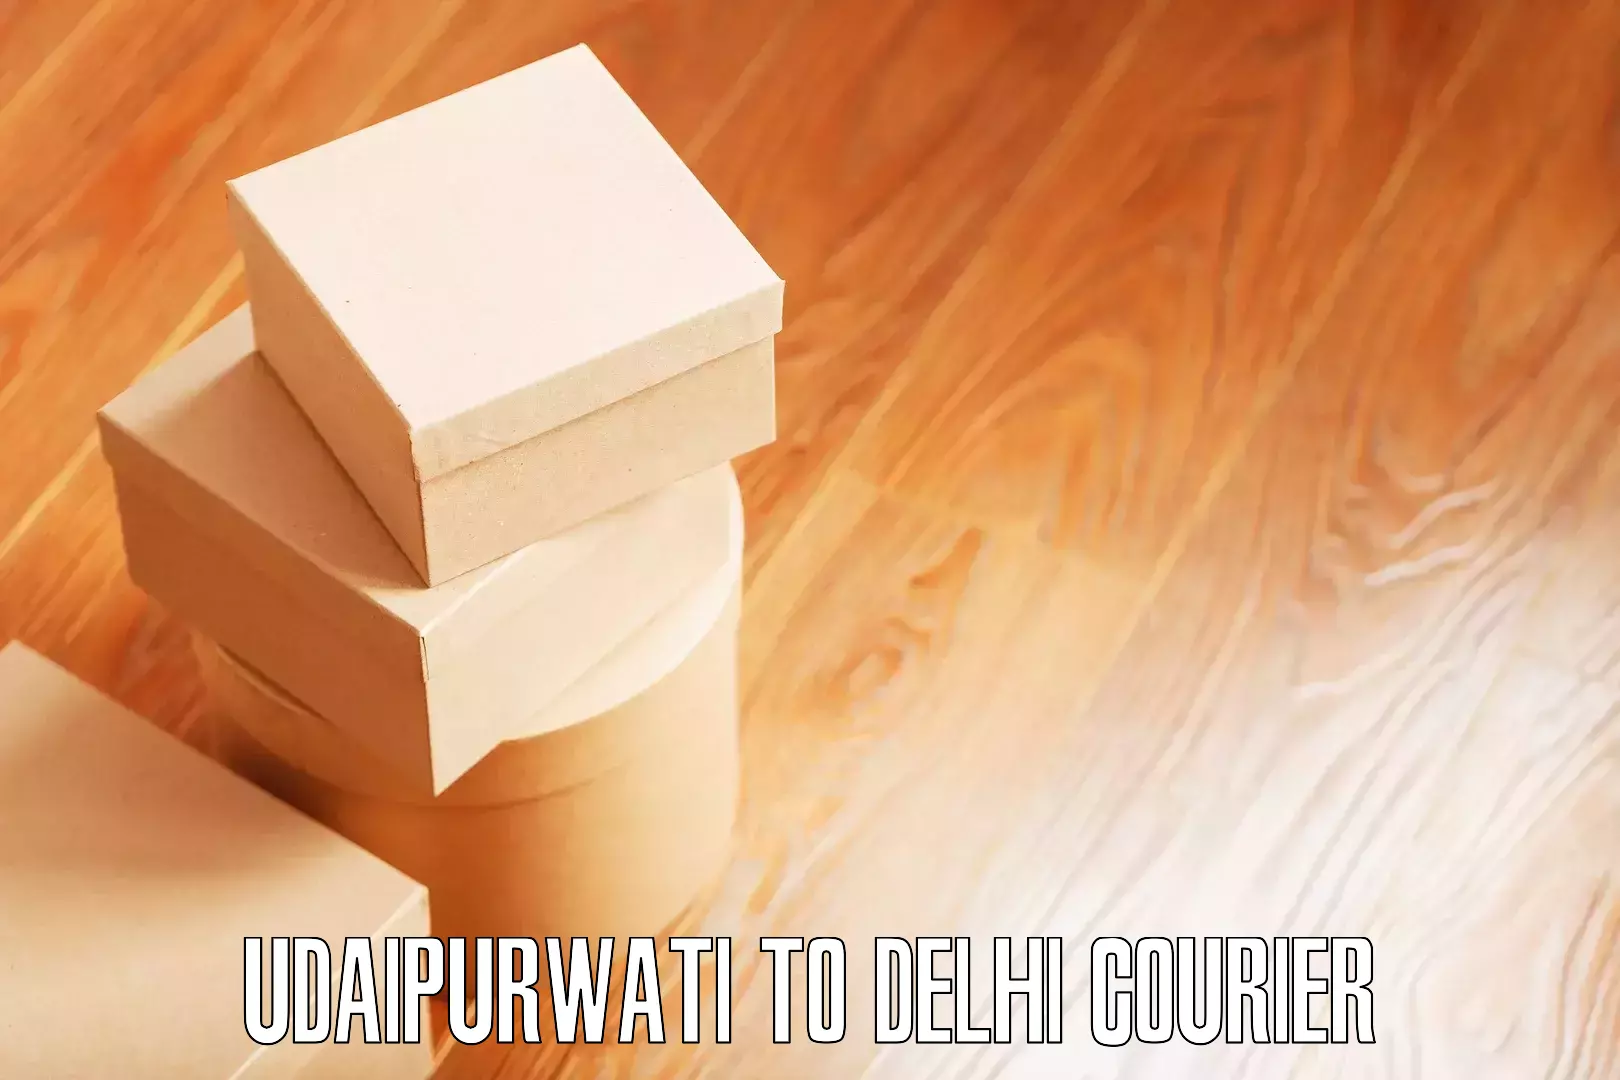 Stress-free furniture moving Udaipurwati to Ashok Vihar